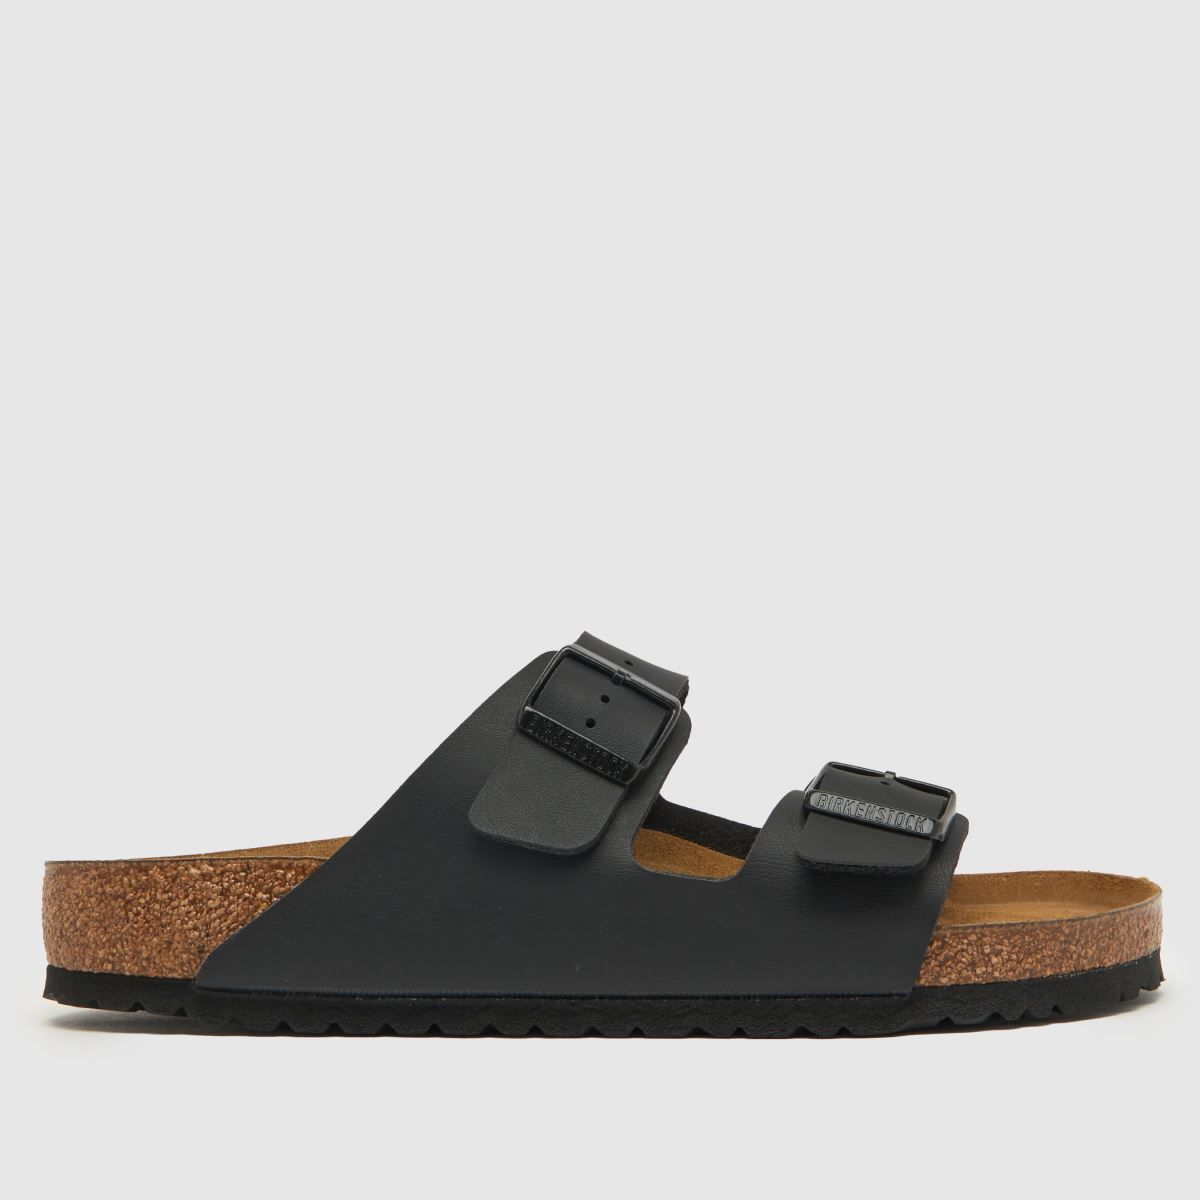 BIRKENSTOCK arizona sandals in black | Schuh